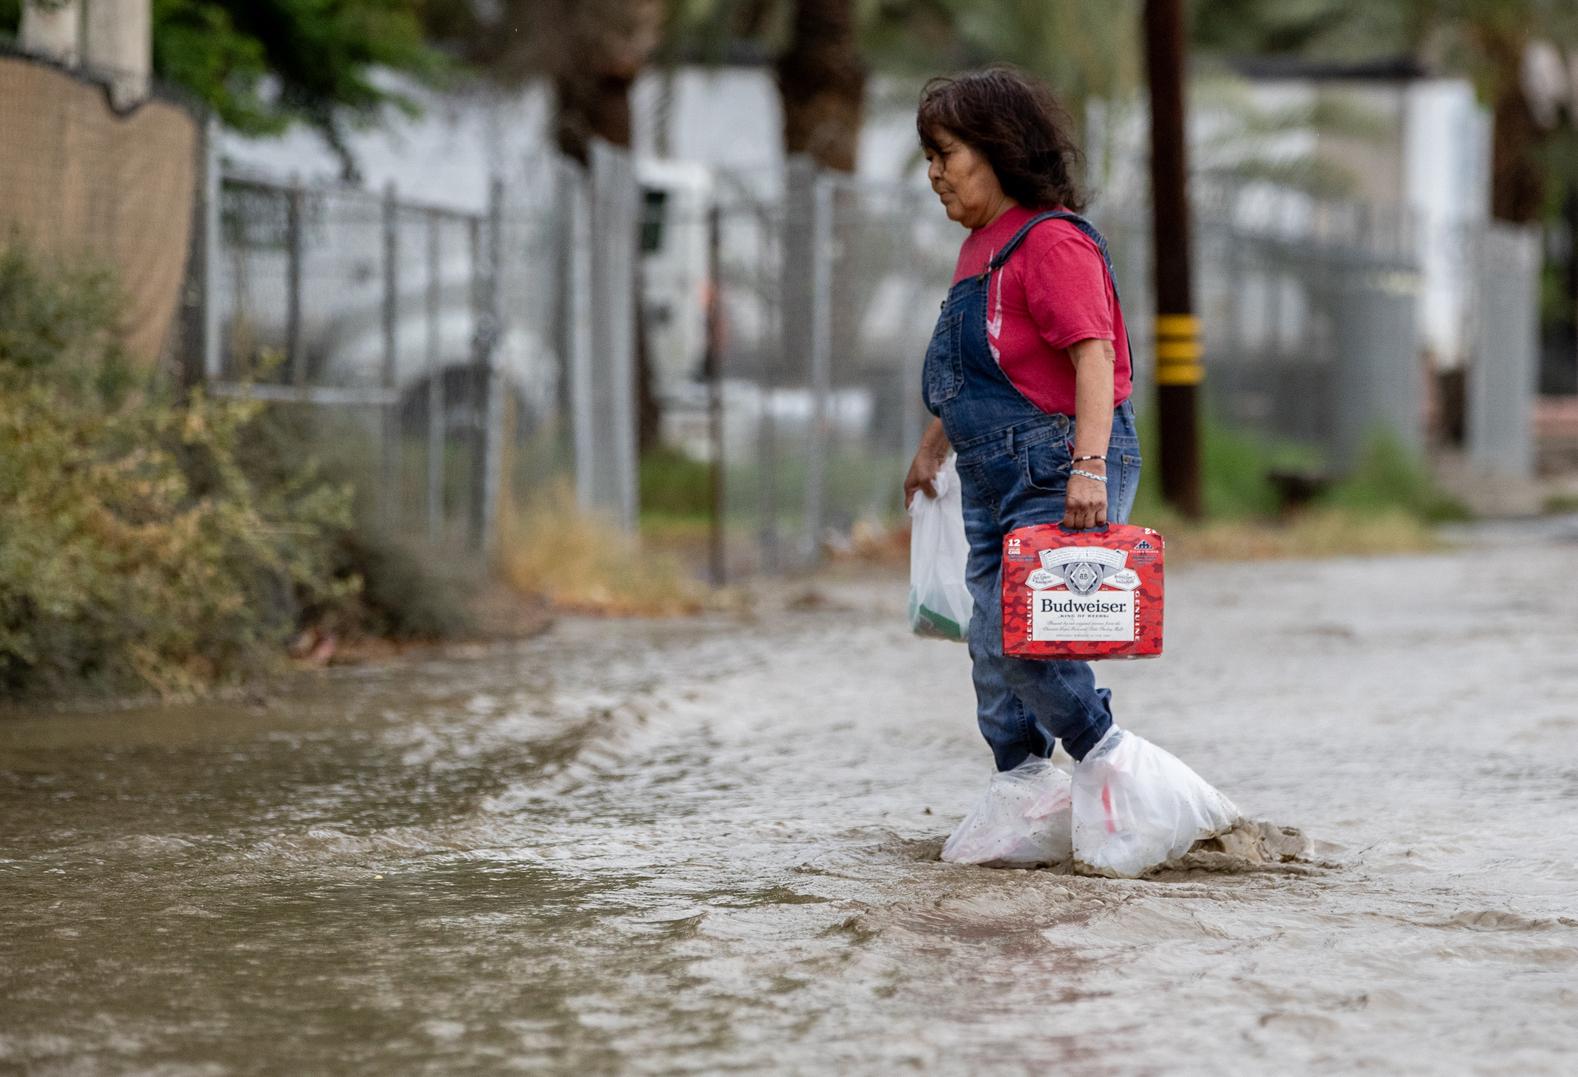 Nannie Auclair usa bolsas de plástico en sus pies para atravesar la inundación mientras carga una caja de cerveza que acaba de comprar en un mercado del vecindario en Thermal, California.